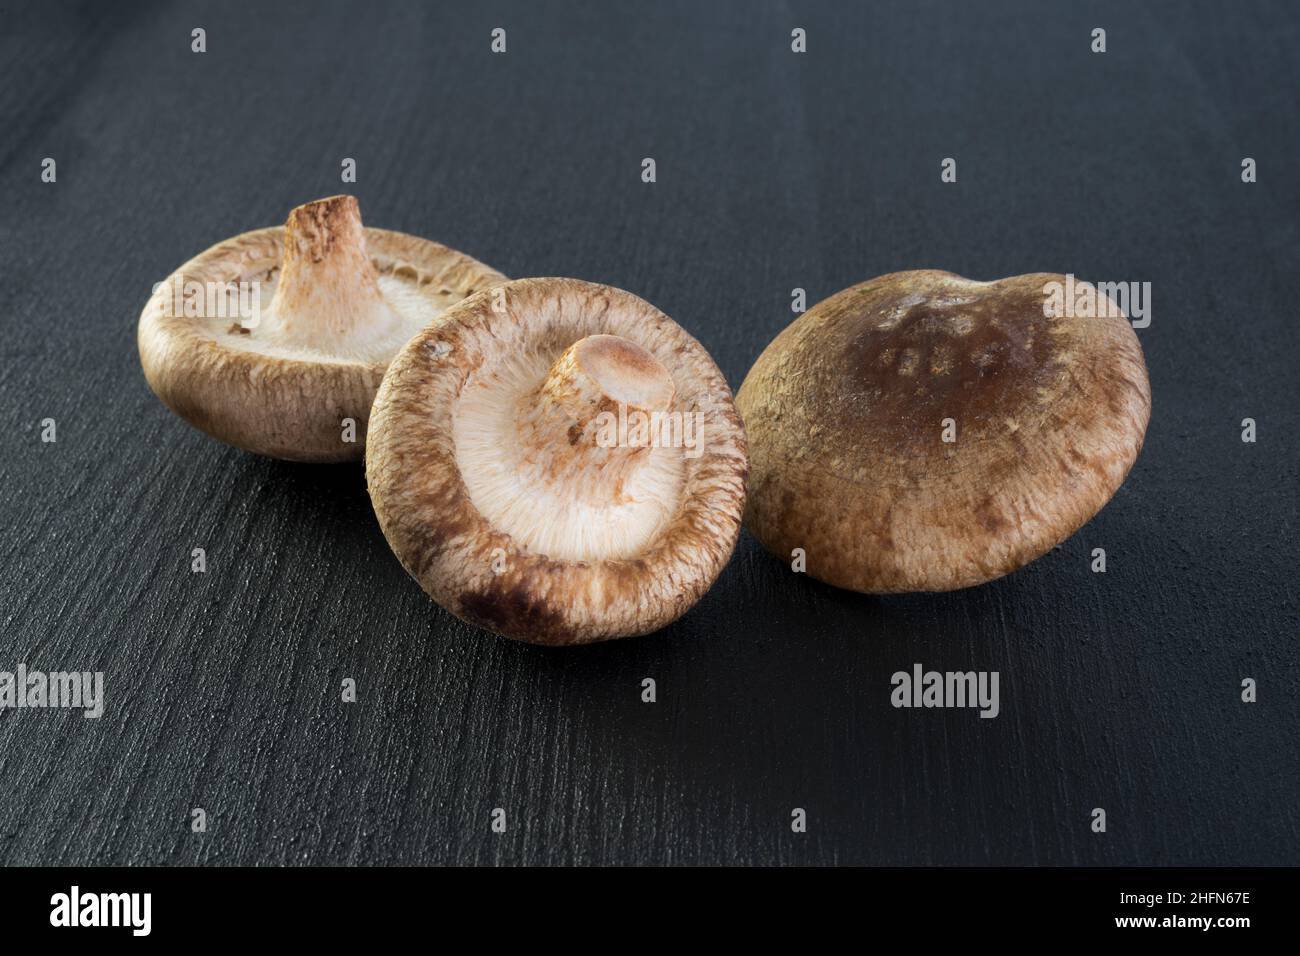 Champignons d'huîtres gros plan sur fond noir, champignons comestibles Banque D'Images